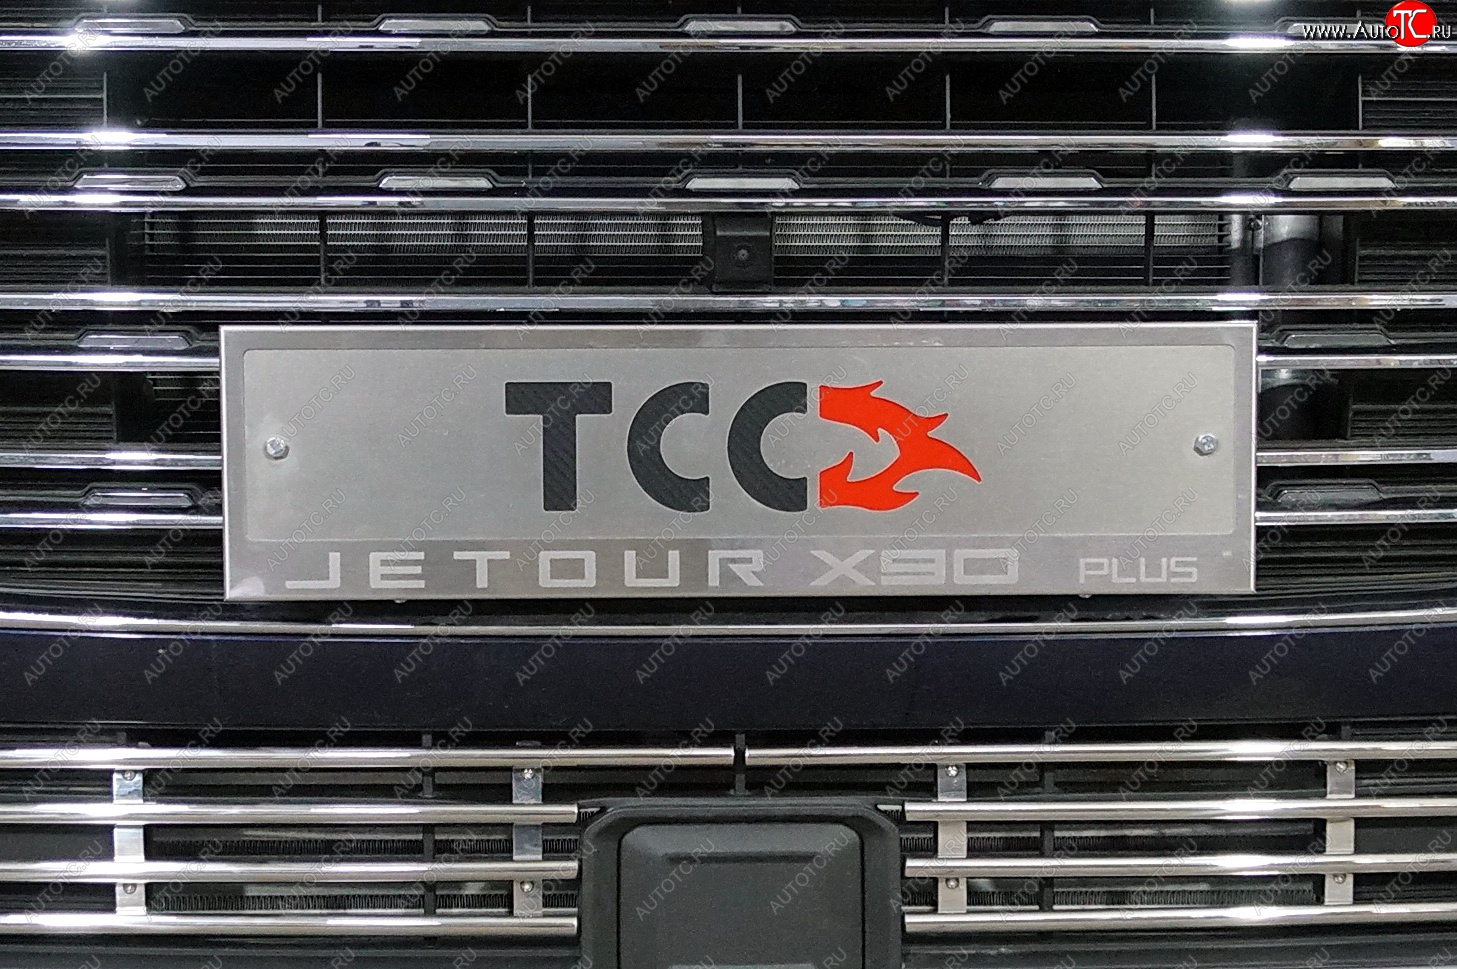 4 999 р. Рамка гос. номера ТСС Тюнинг  Jetour X90 Plus (2021-2024) (нержавейка)  с доставкой в г. Санкт‑Петербург